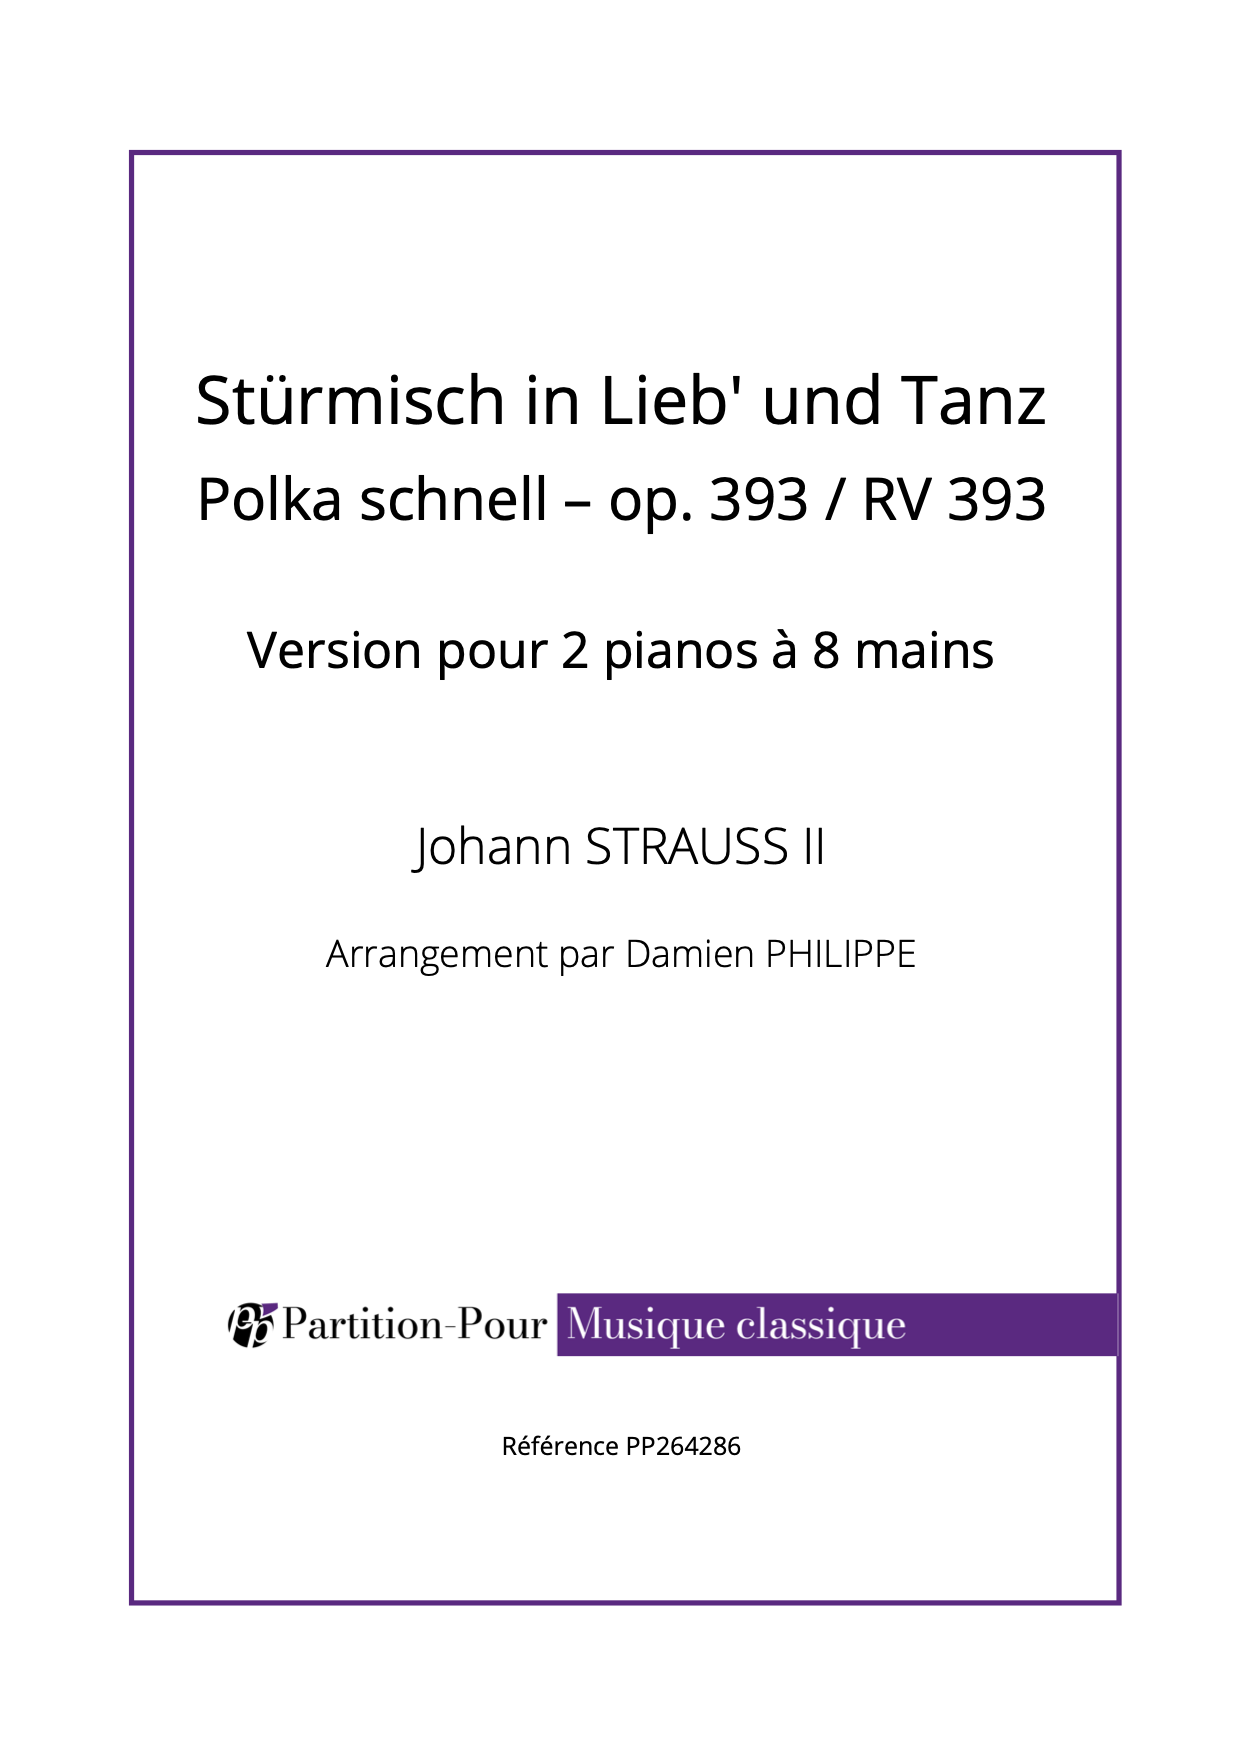 PP264286 Strauss J II - Stürmisch in Lieb' und Tanz - Polka schnell op. 393 : RV 393 - 2 pianos 8 mains -présentation